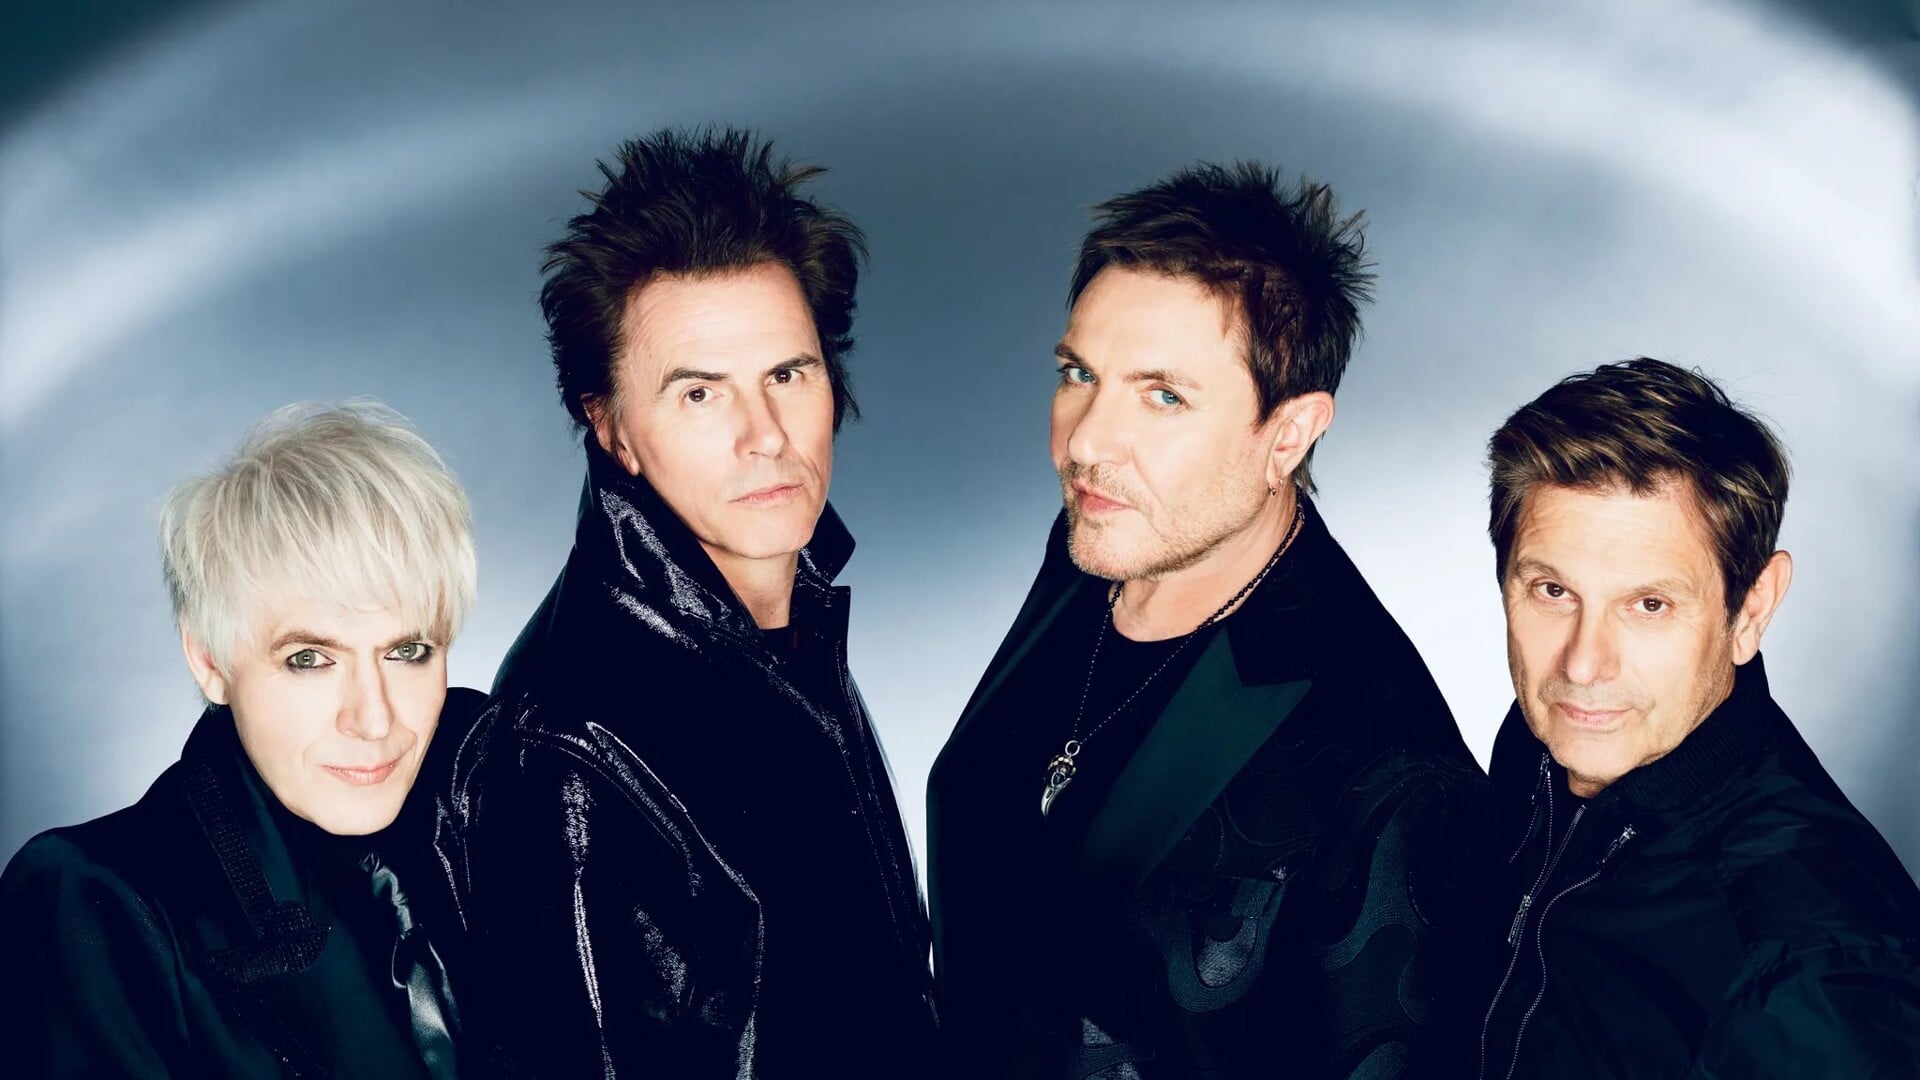 Verwacht alle bekende hits van Duran Duran.